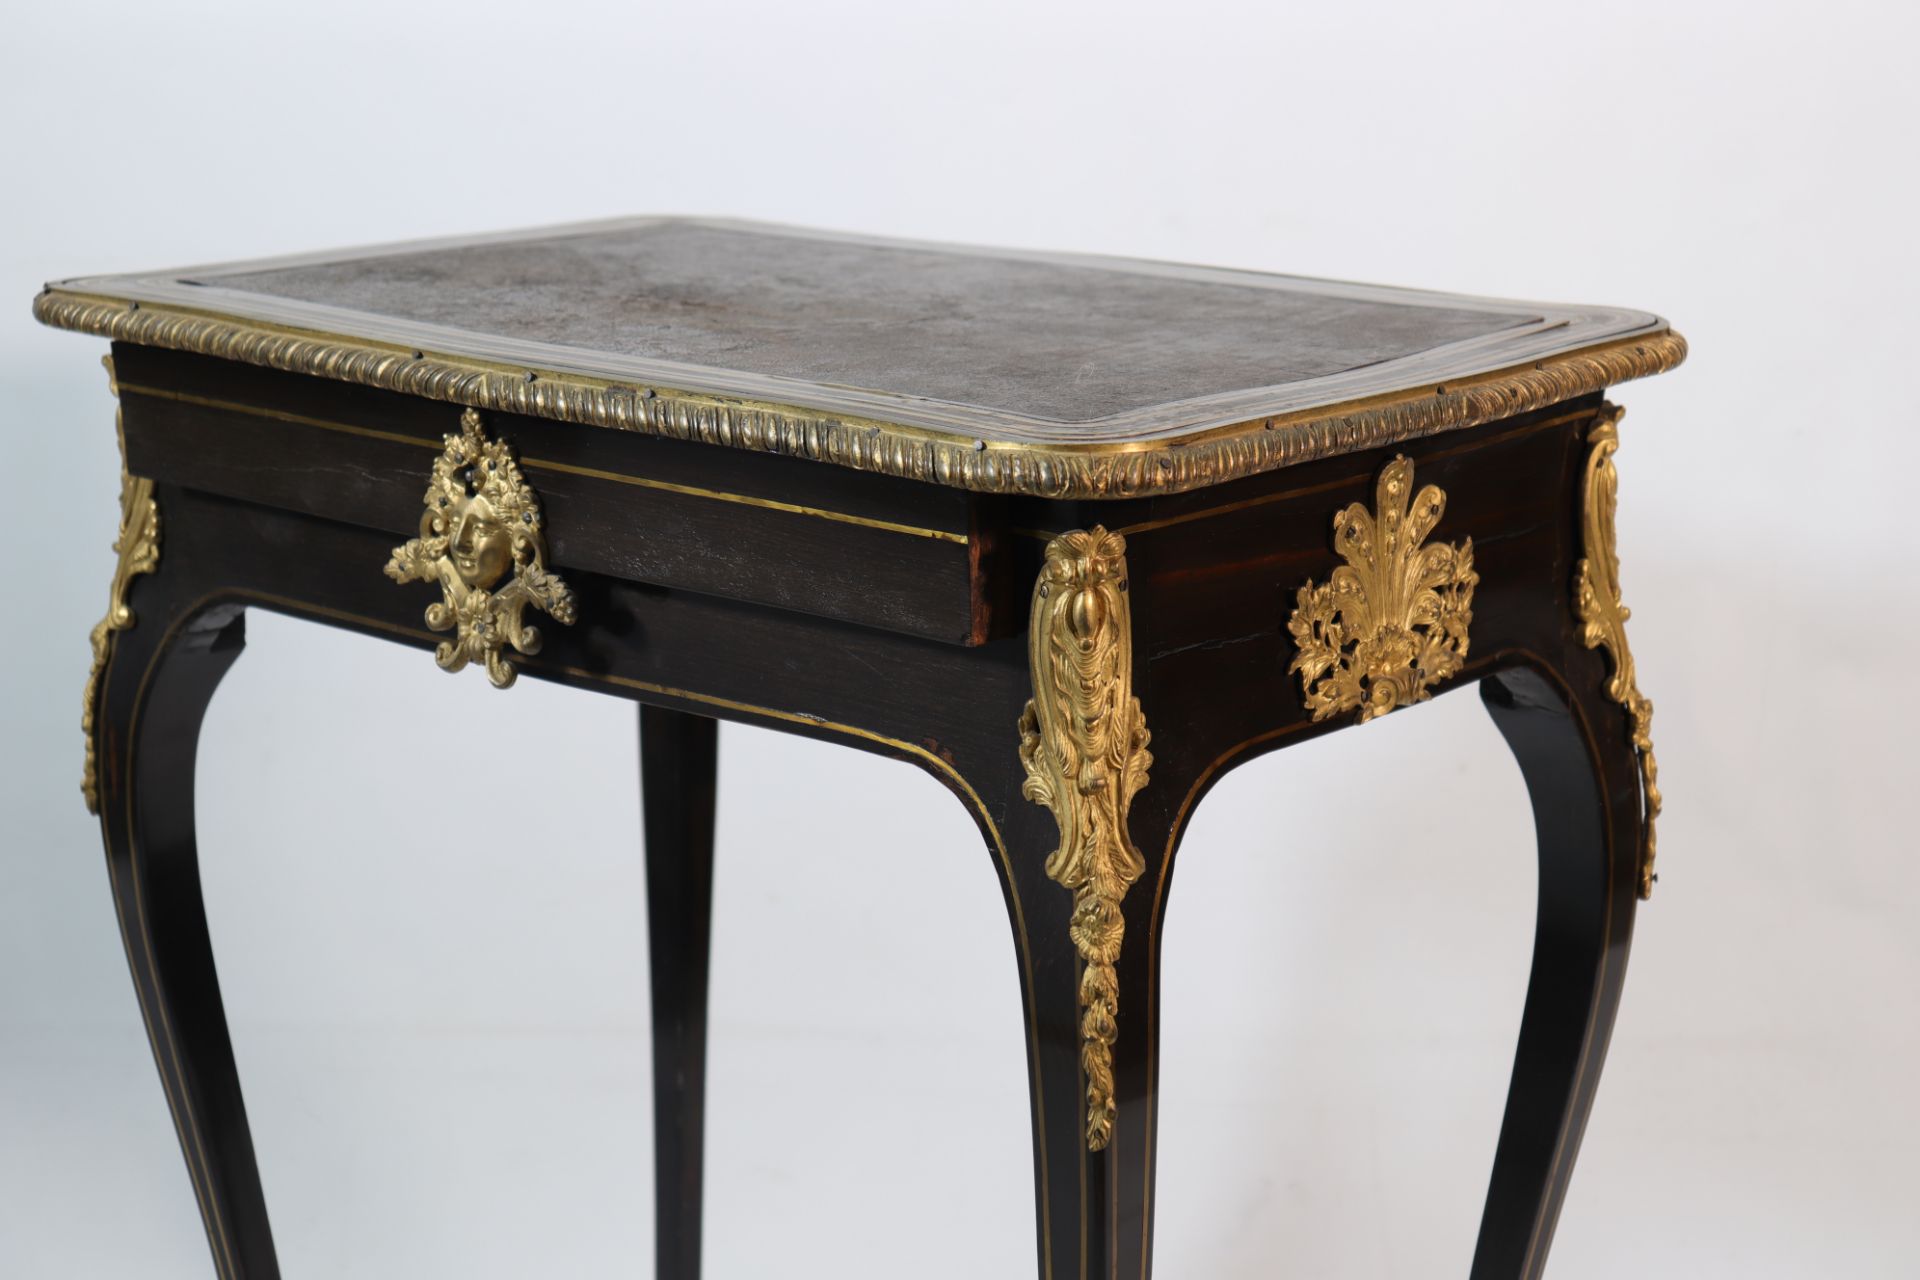 Napoleon III table gilt bronze ornaments - Image 3 of 3